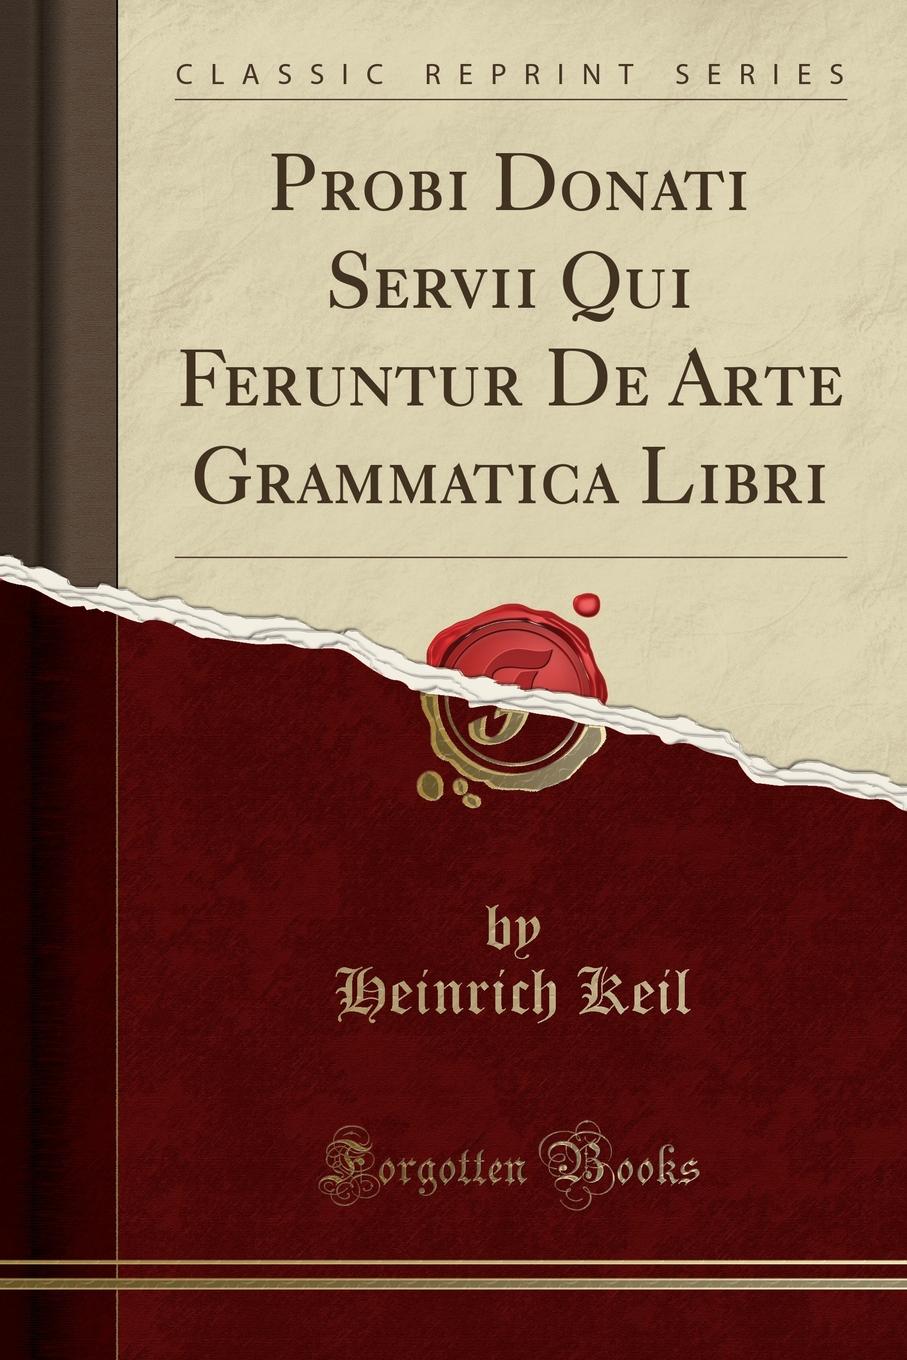 Heinrich Keil Probi Donati Servii Qui Feruntur De Arte Grammatica Libri (Classic Reprint)